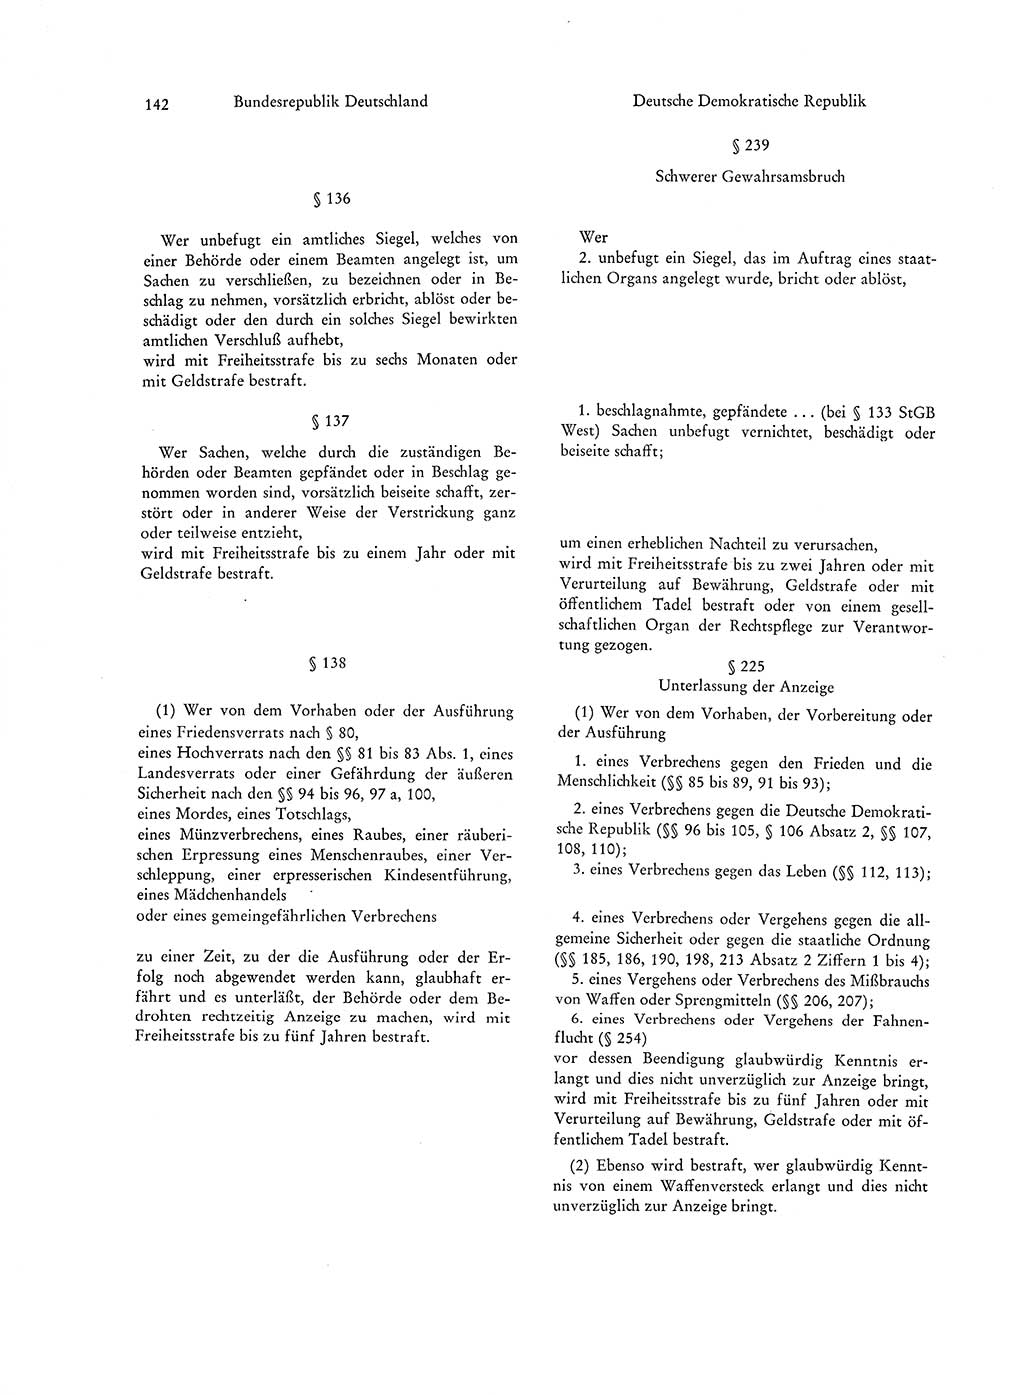 Strafgesetzgebung in Deutschland [Bundesrepublik Deutschland (BRD) und Deutsche Demokratische Republik (DDR)] 1972, Seite 142 (Str.-Ges. Dtl. StGB BRD DDR 1972, S. 142)